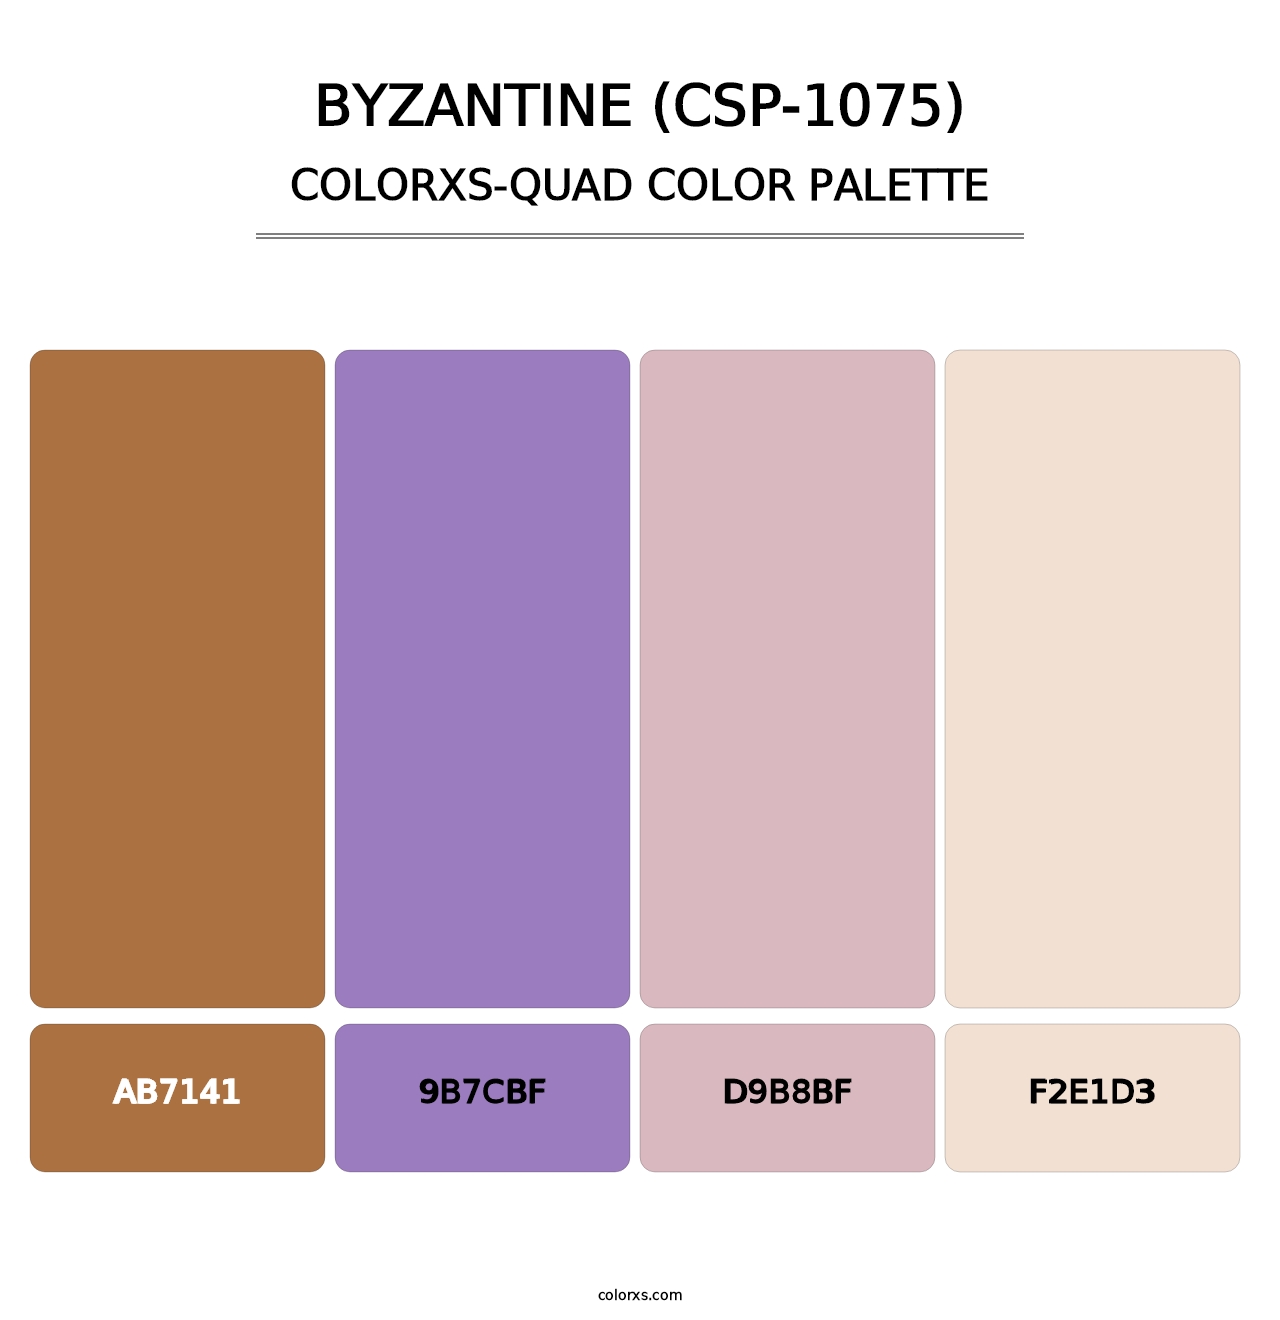 Byzantine (CSP-1075) - Colorxs Quad Palette